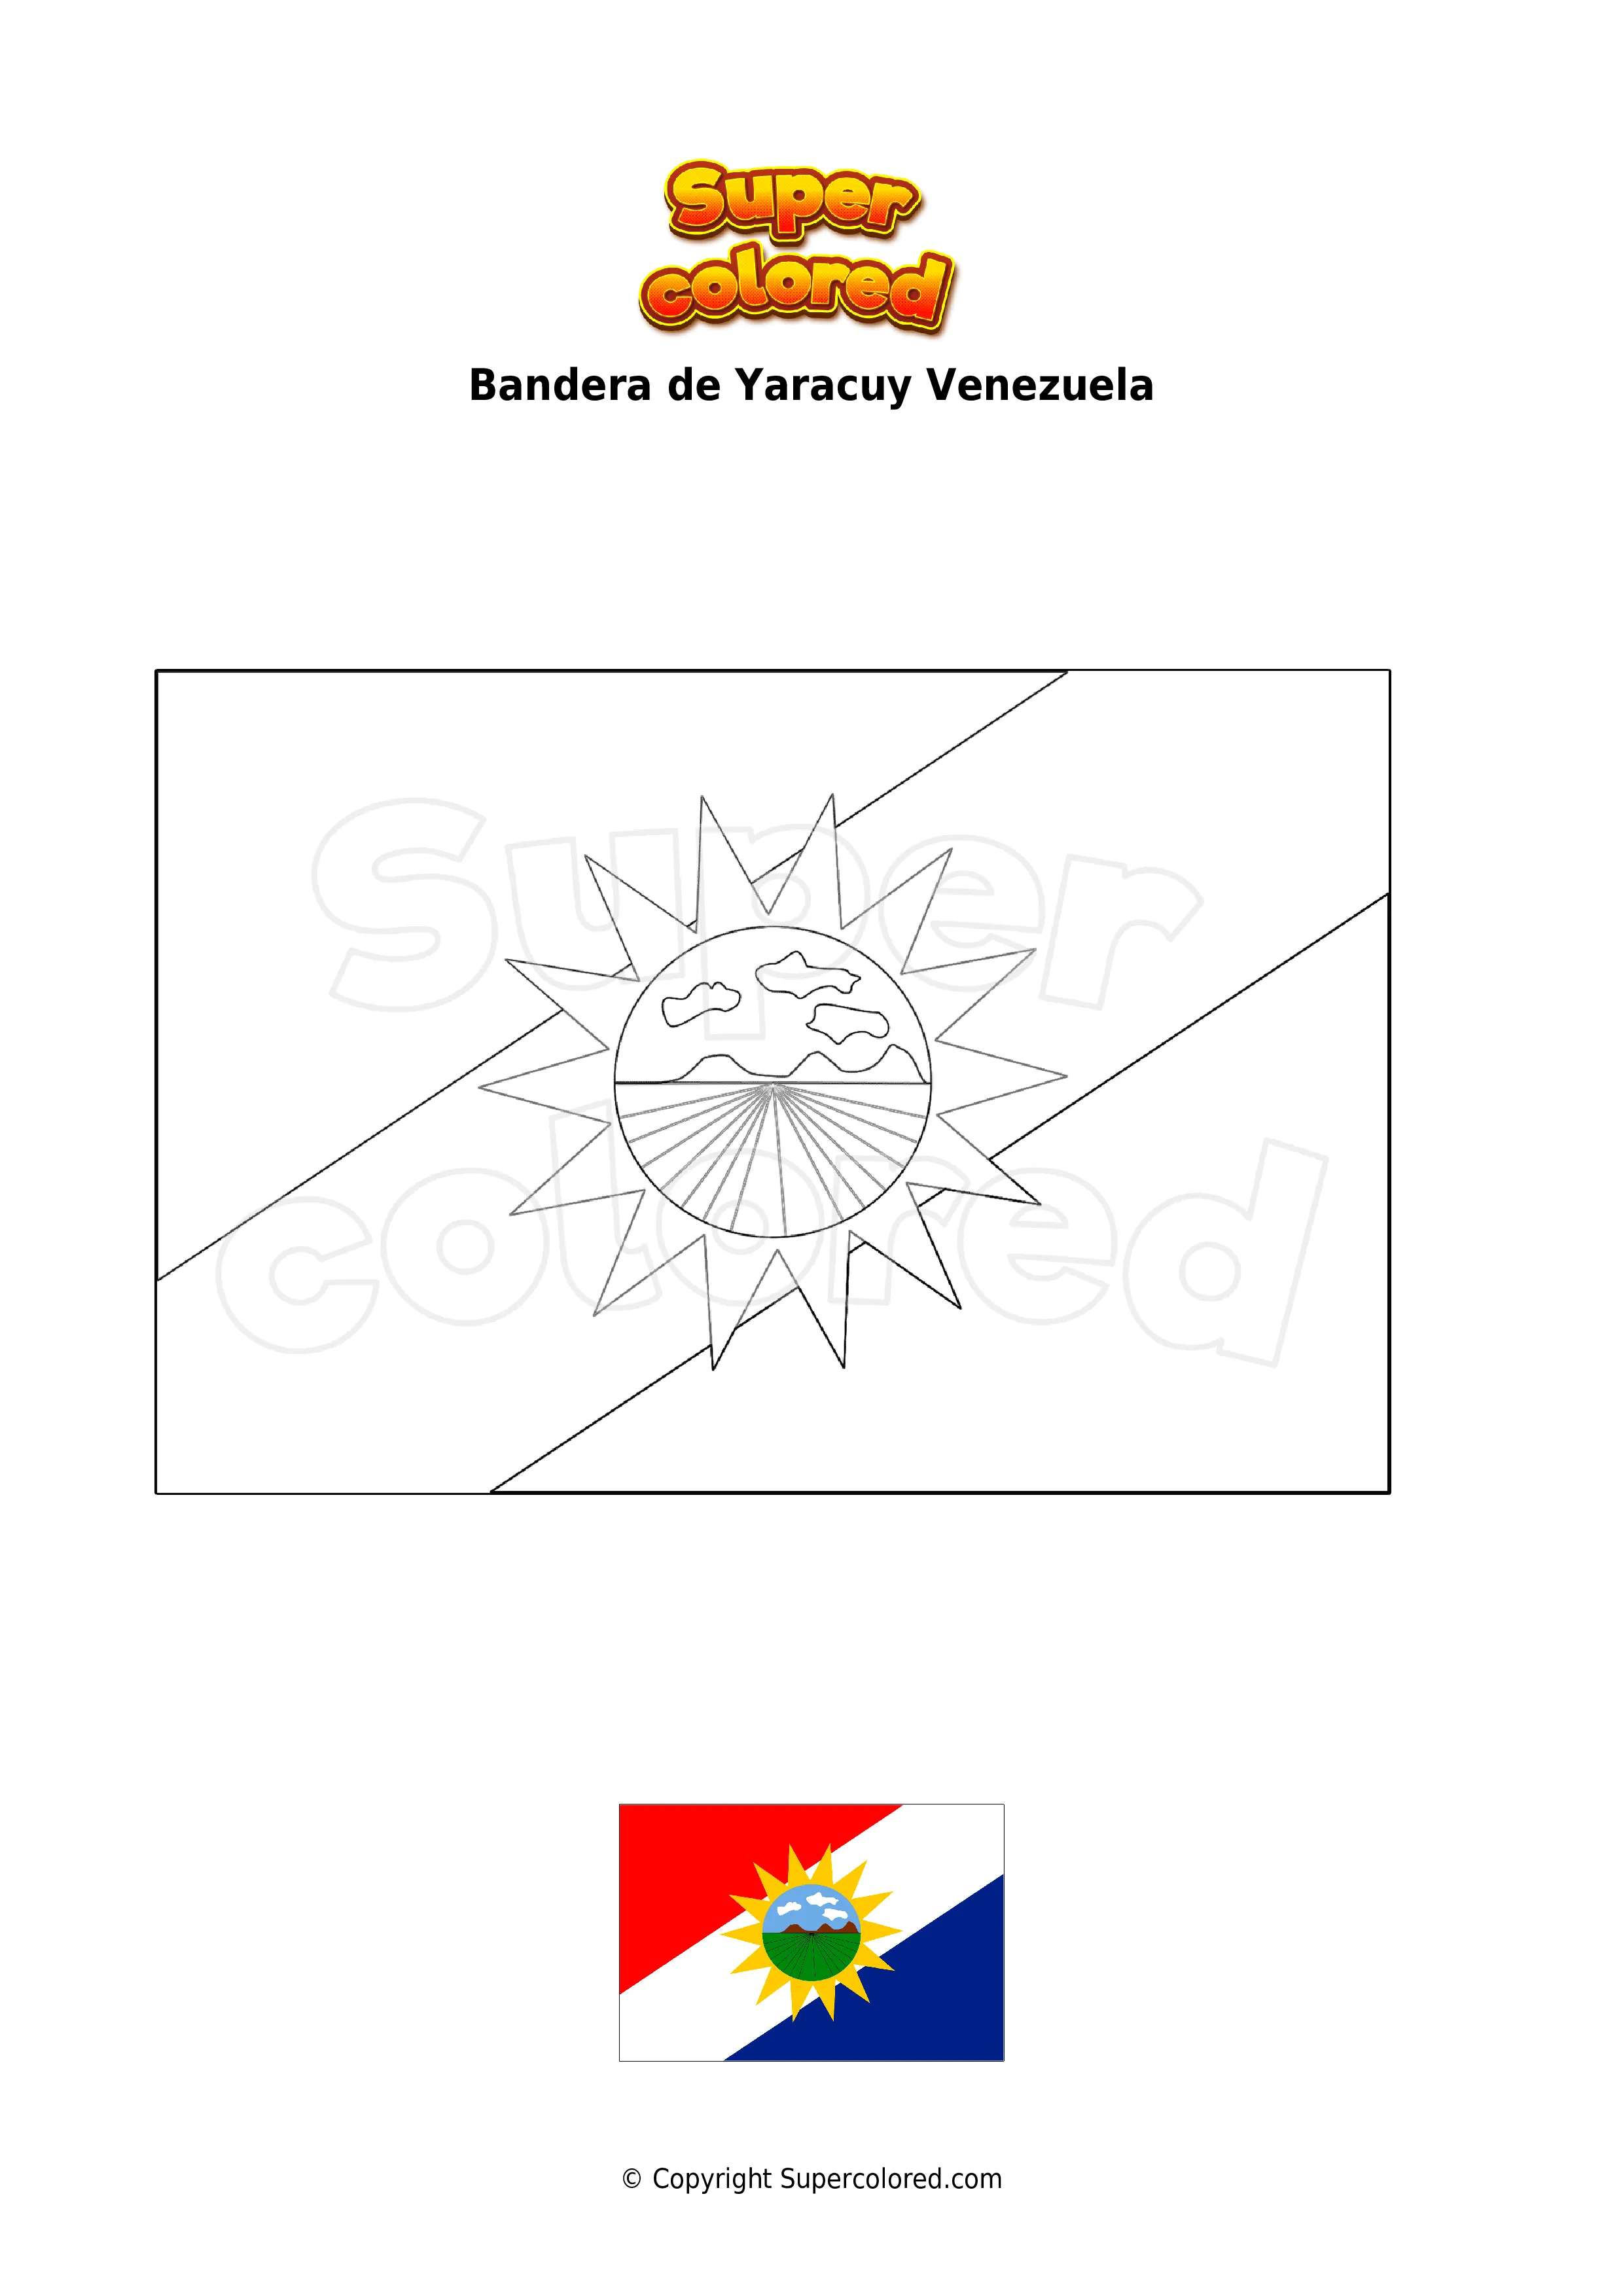 Dibujo para colorear Bandera de Yaracuy Venezuela - Supercolored.com